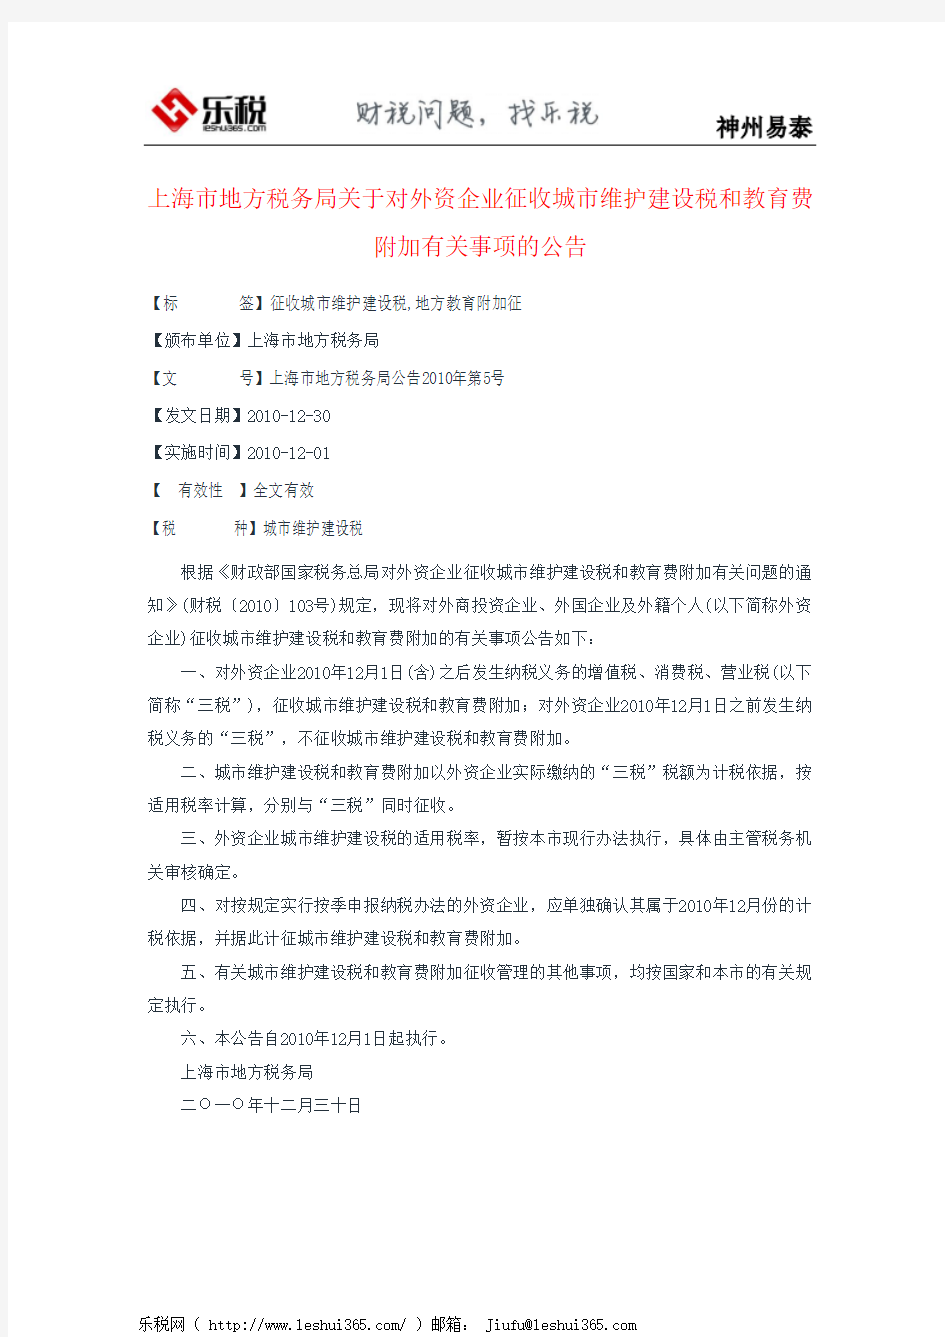 上海市地方税务局关于对外资企业征收城市维护建设税和教育费附加